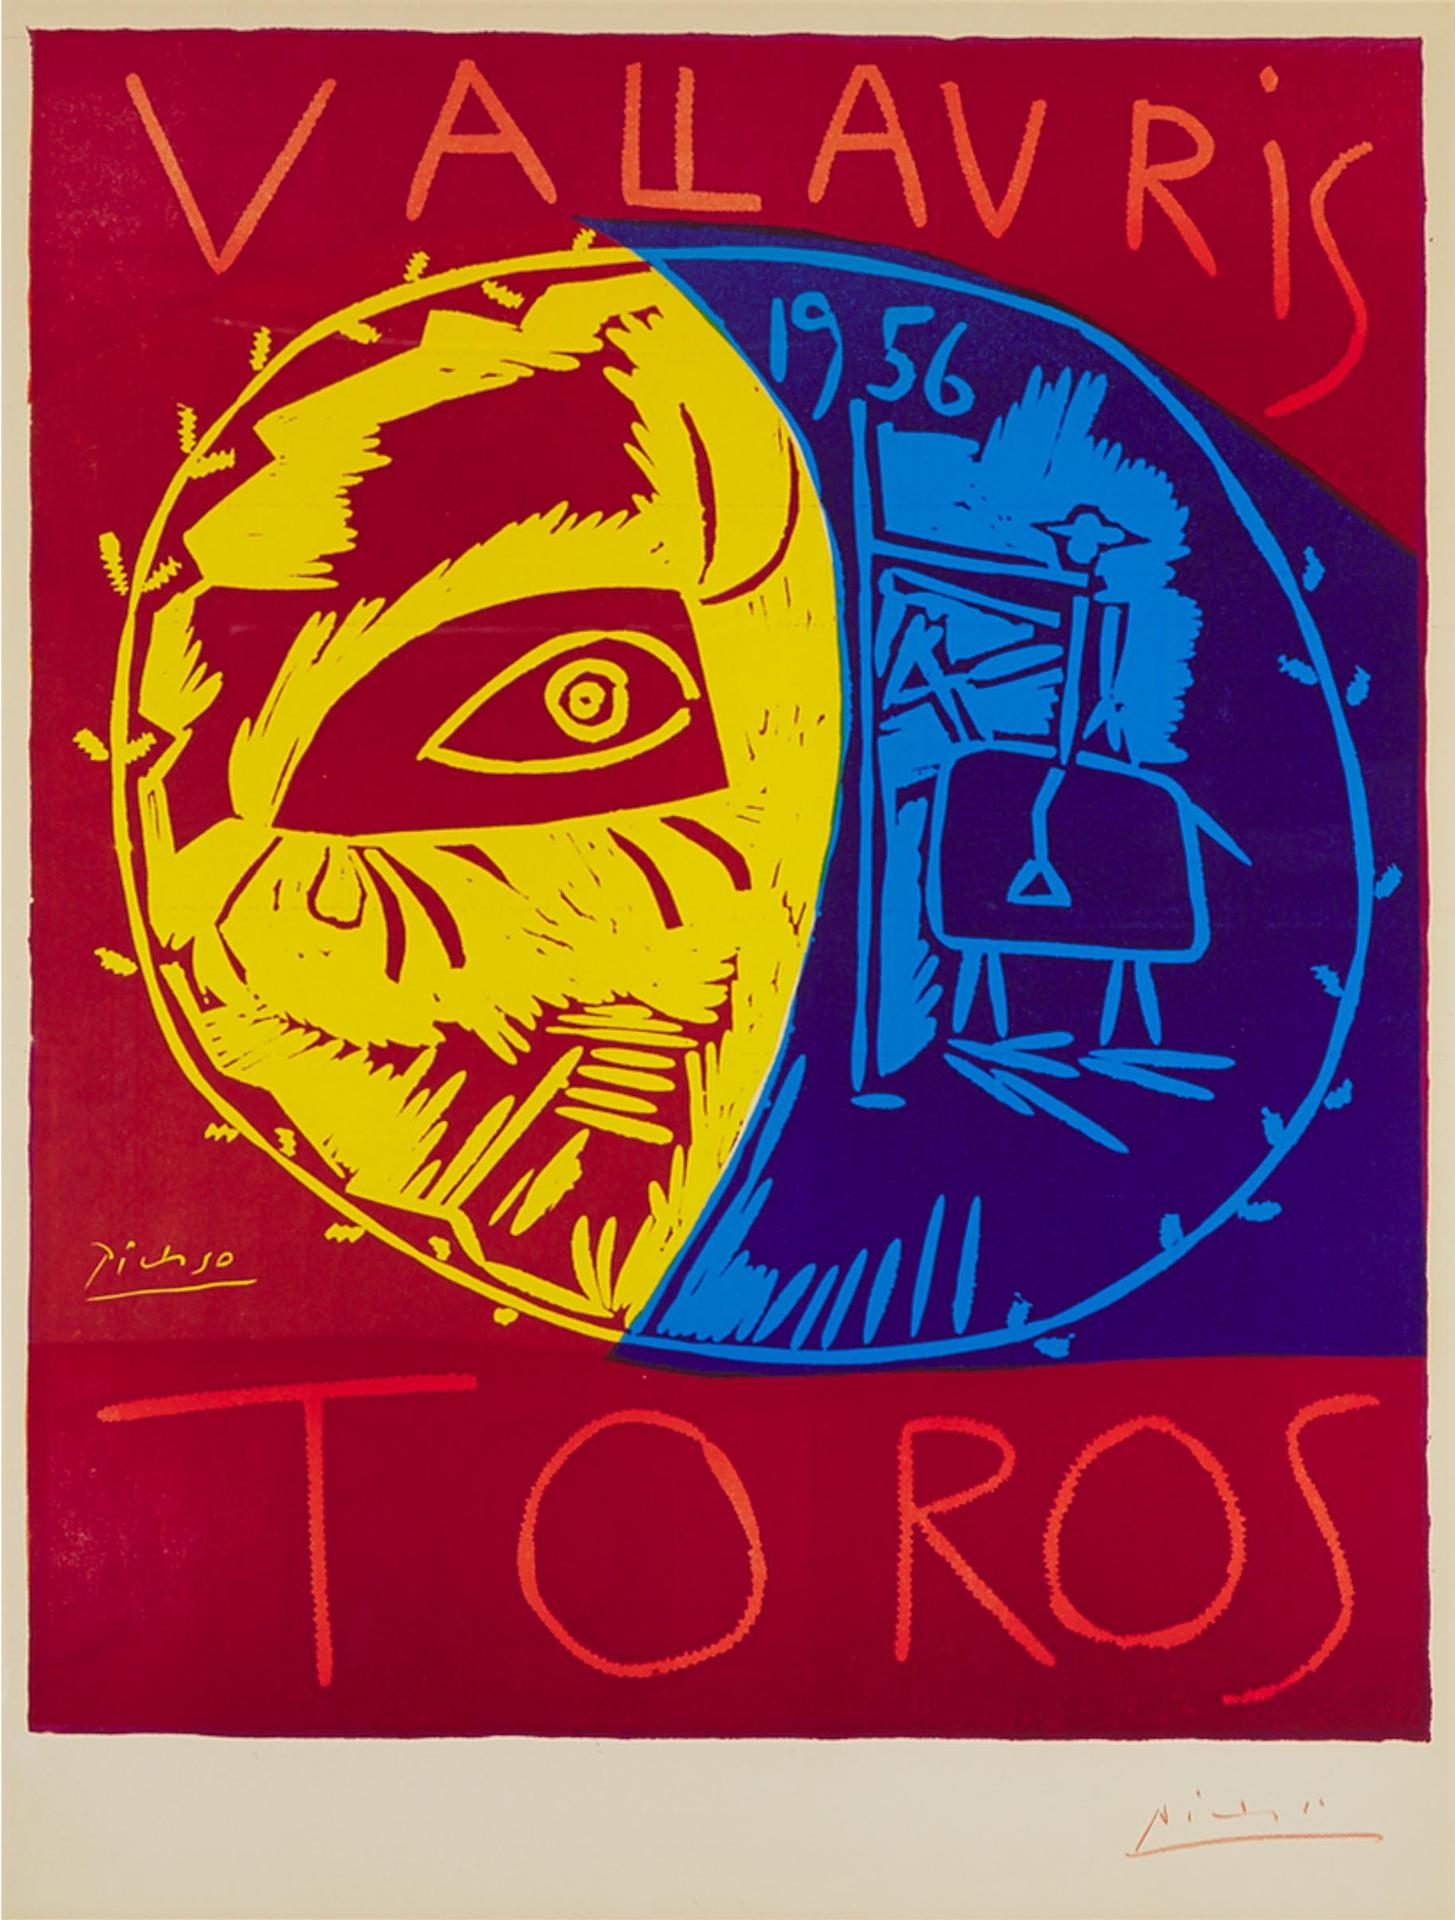 Pablo Ruiz Picasso (1881-1973) - Vallauris Toros, 1956 [bloch, 1270]